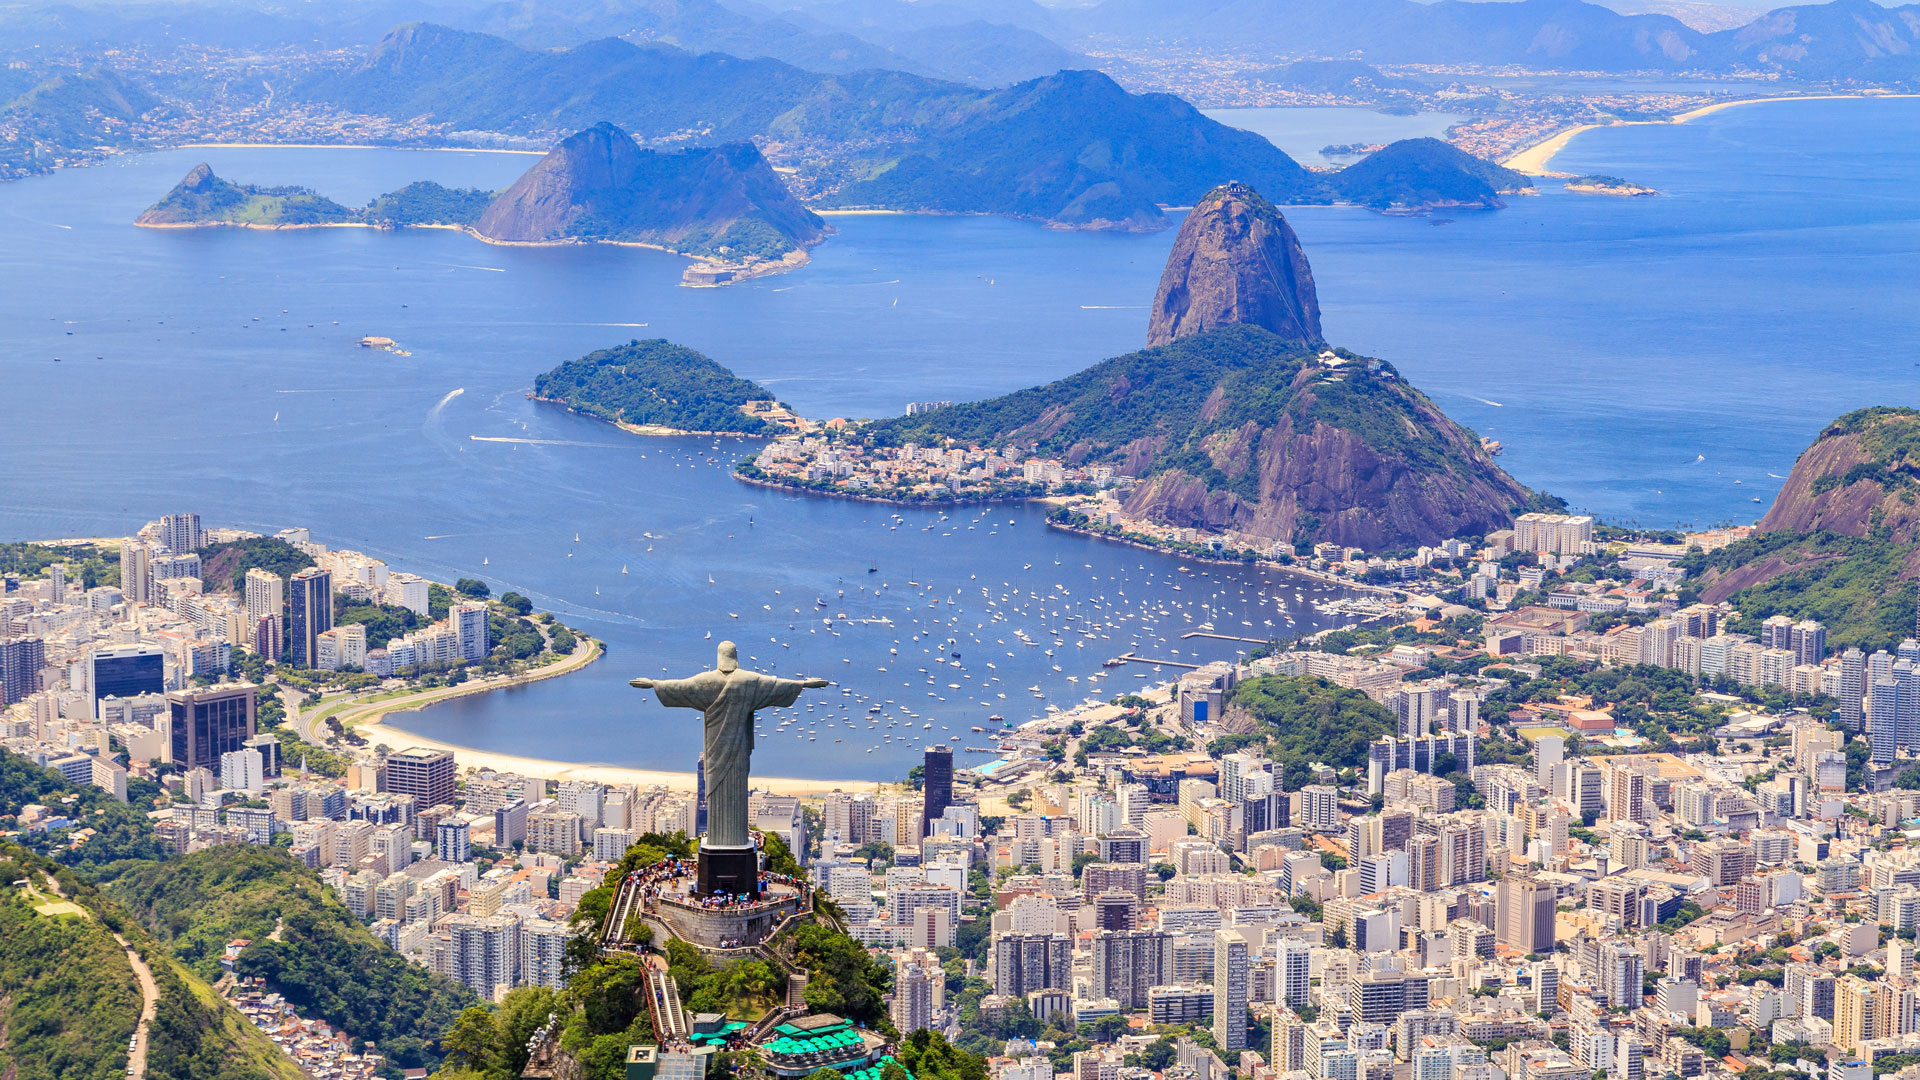 An image of Rio de Janeiro Brazil